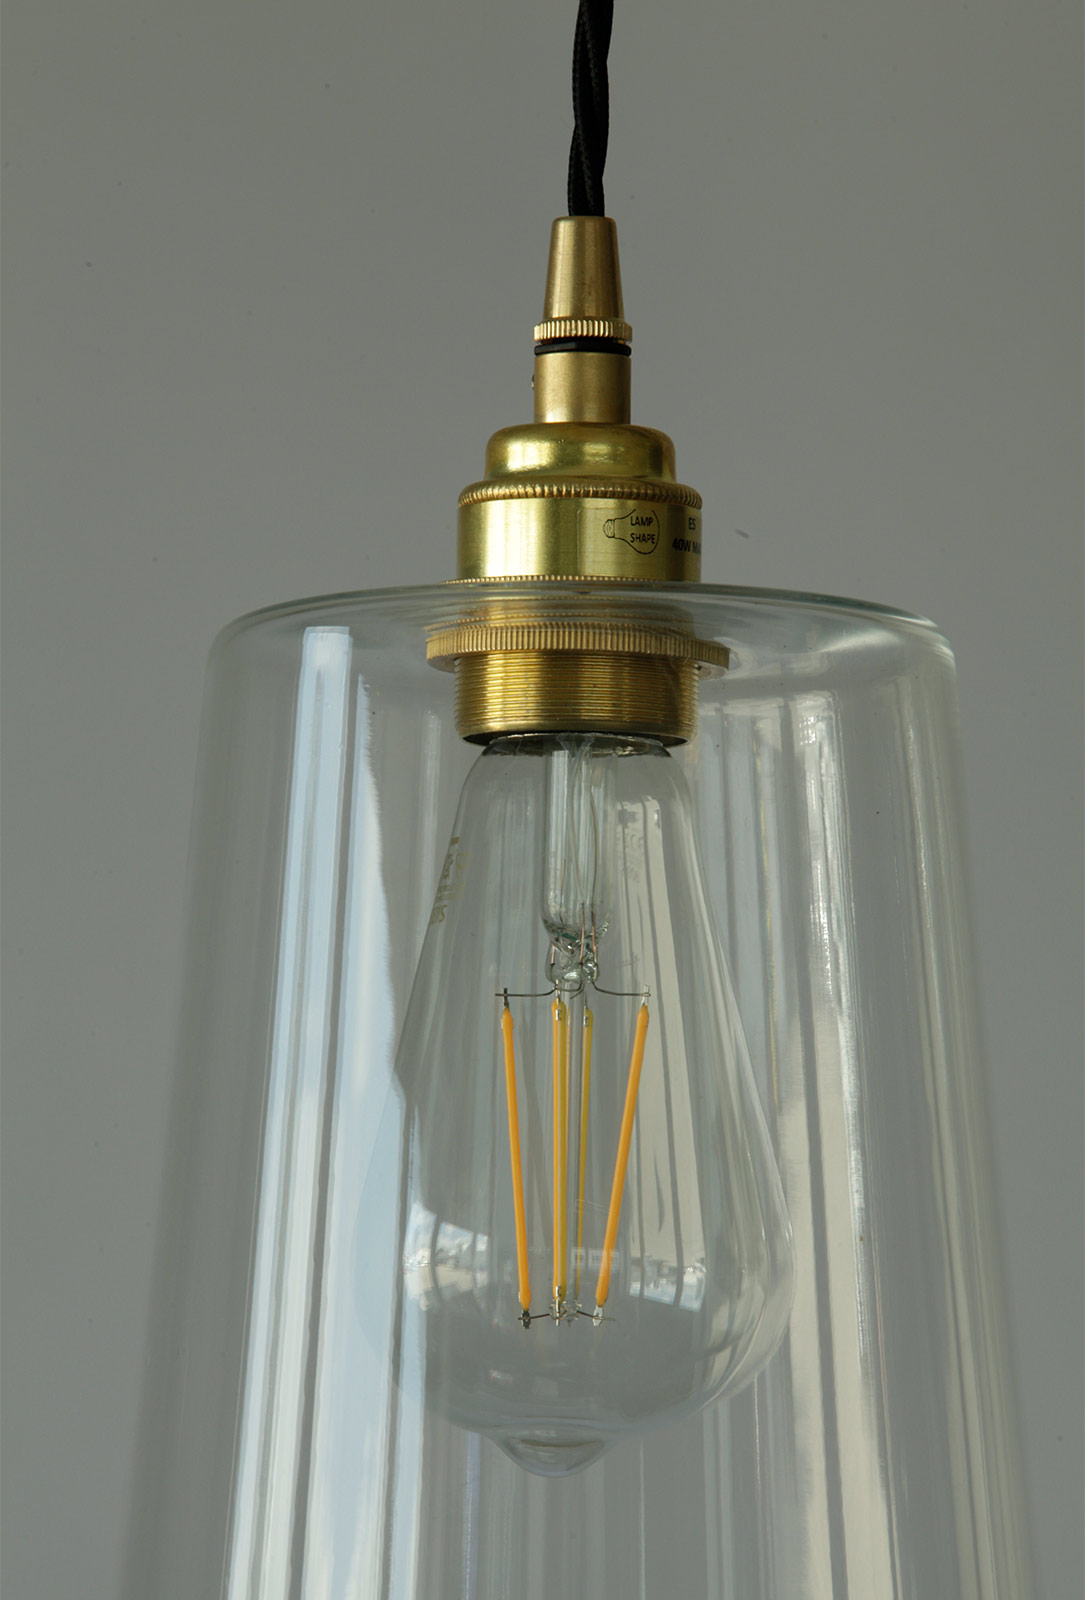 Schlanke Pendelleuchte mit 40 cm hohem Glas-Schirm: Glashalter und Fassung hier in Messing satiniert